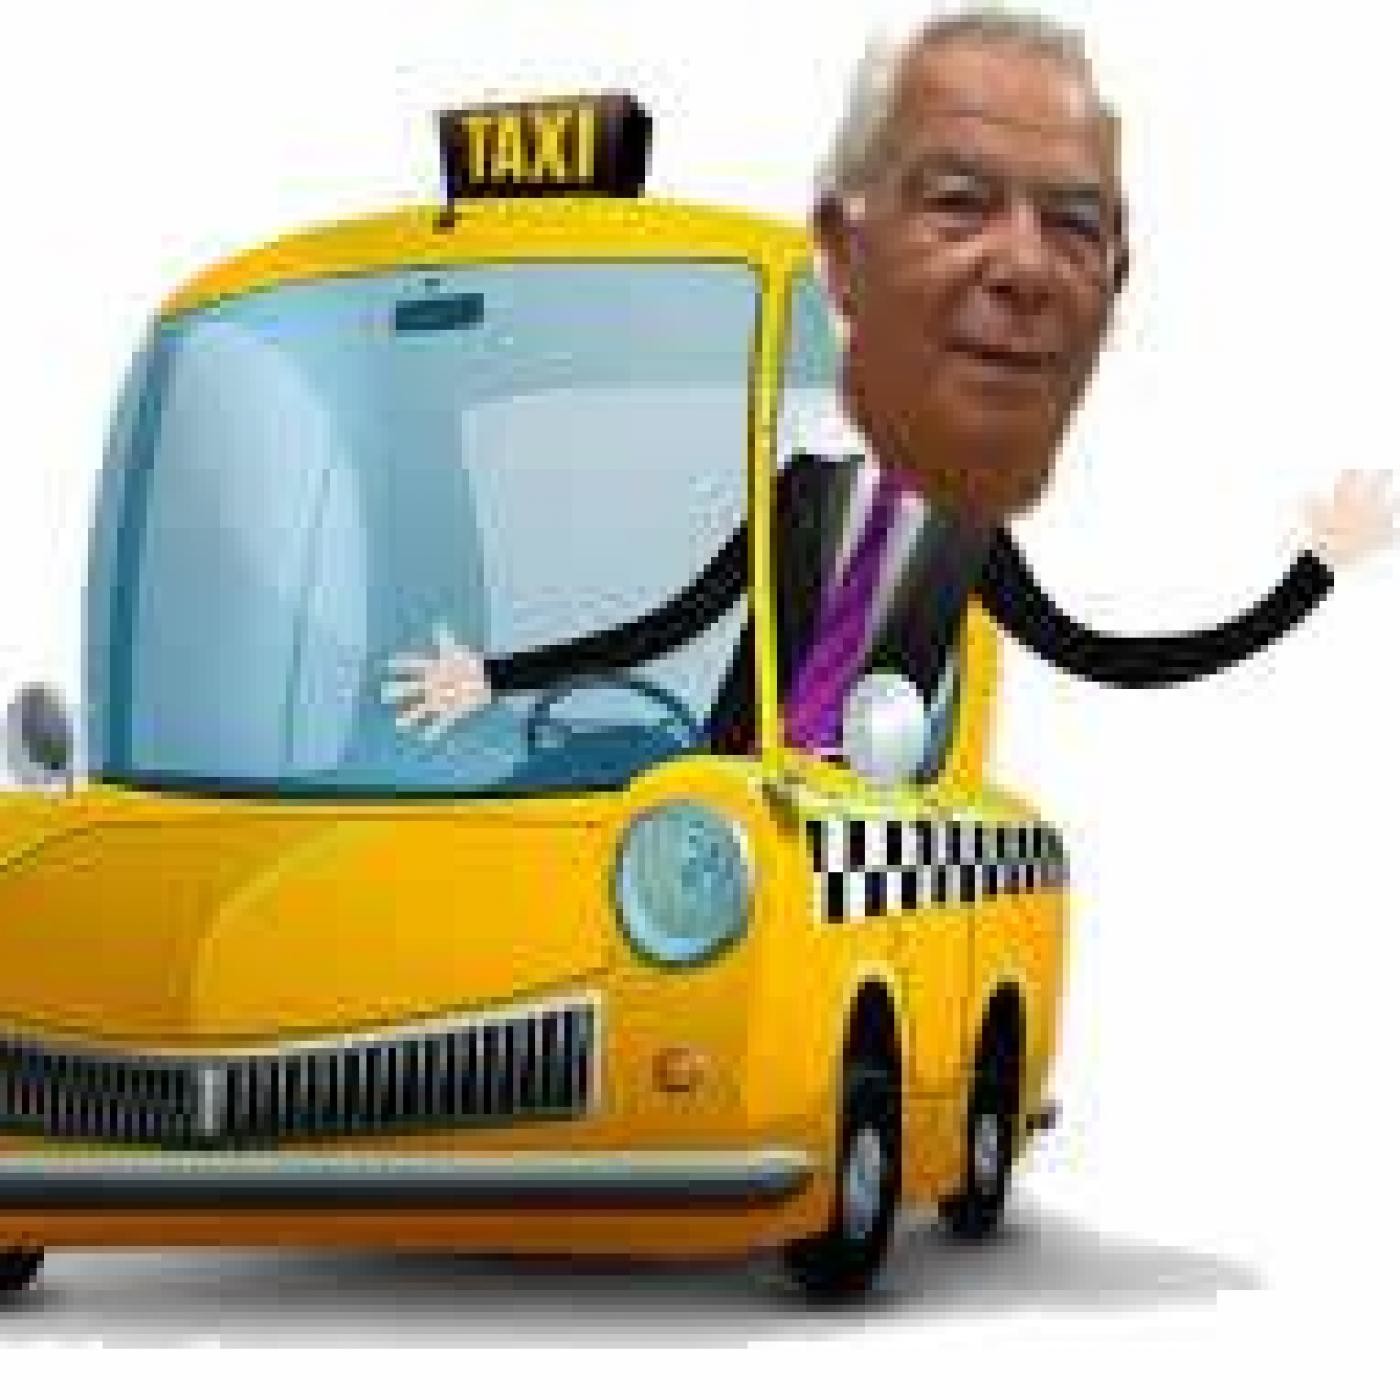 La hora del taxi 21 de octubre de 2016